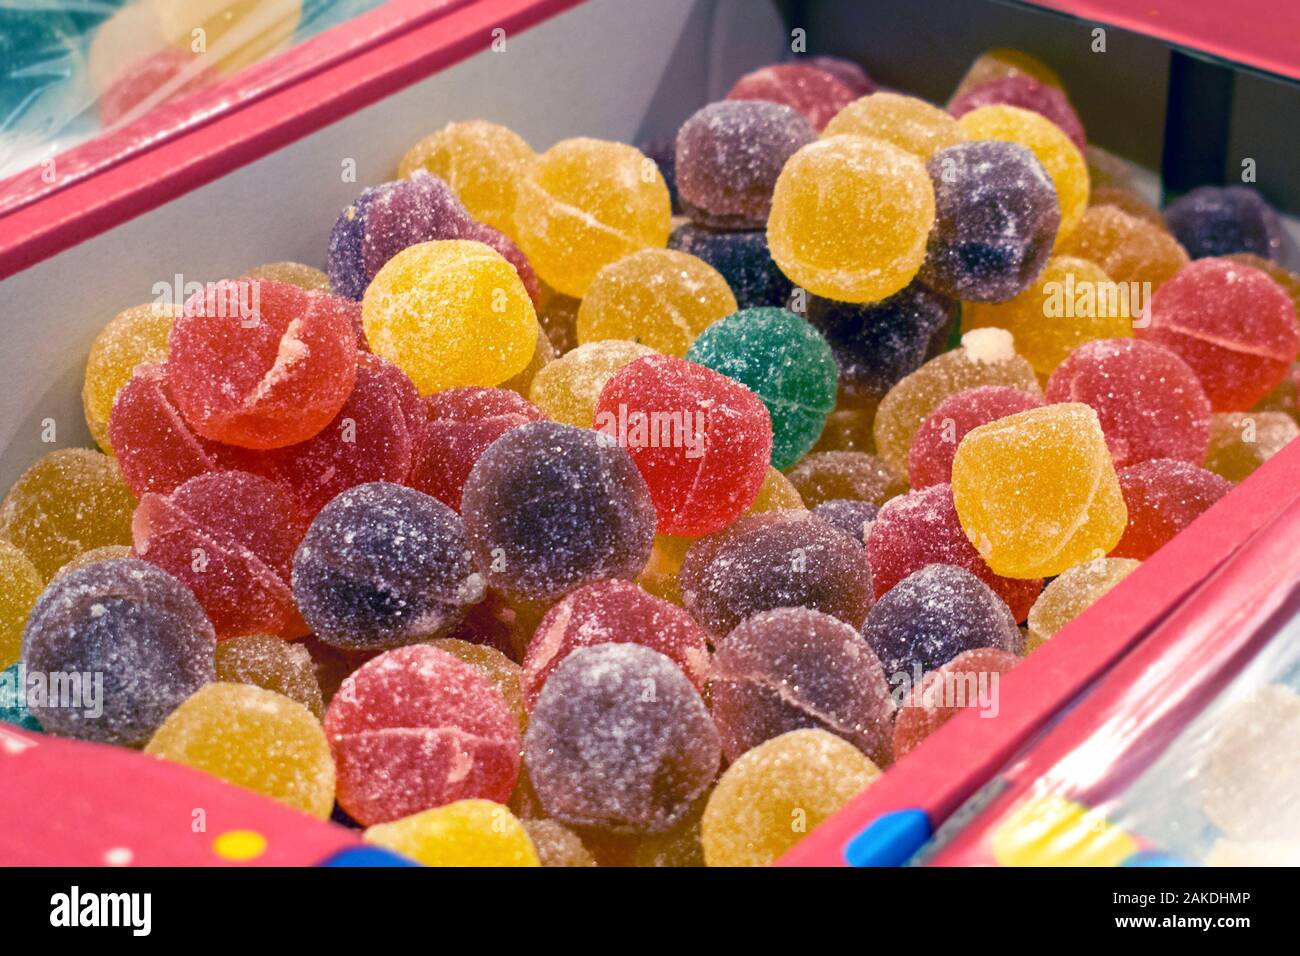 Bonbons de gelée de couleurs différentes dans une boîte, sur une étagère de supermarché. Boules rondes de marmelade dans le sucre. Banque D'Images